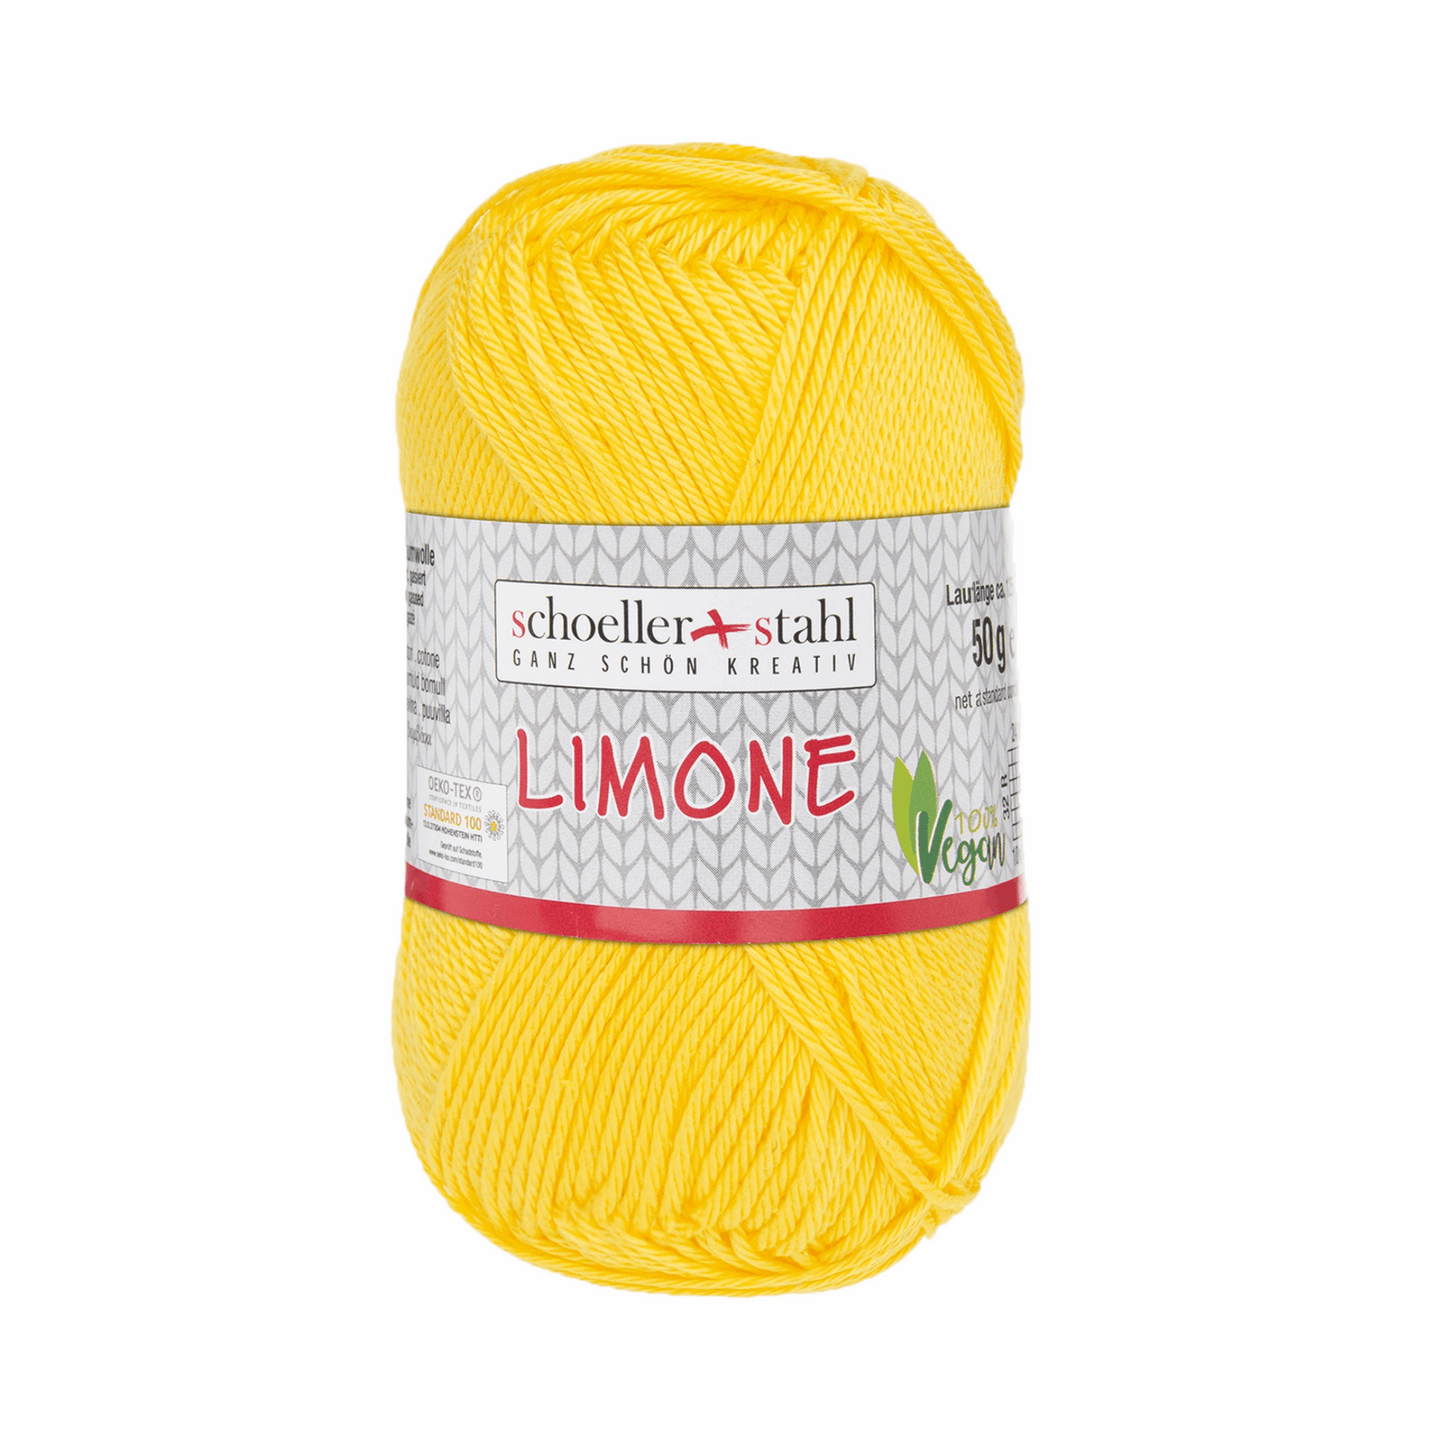 Limone 50g, 90130, Farbe 4, honig